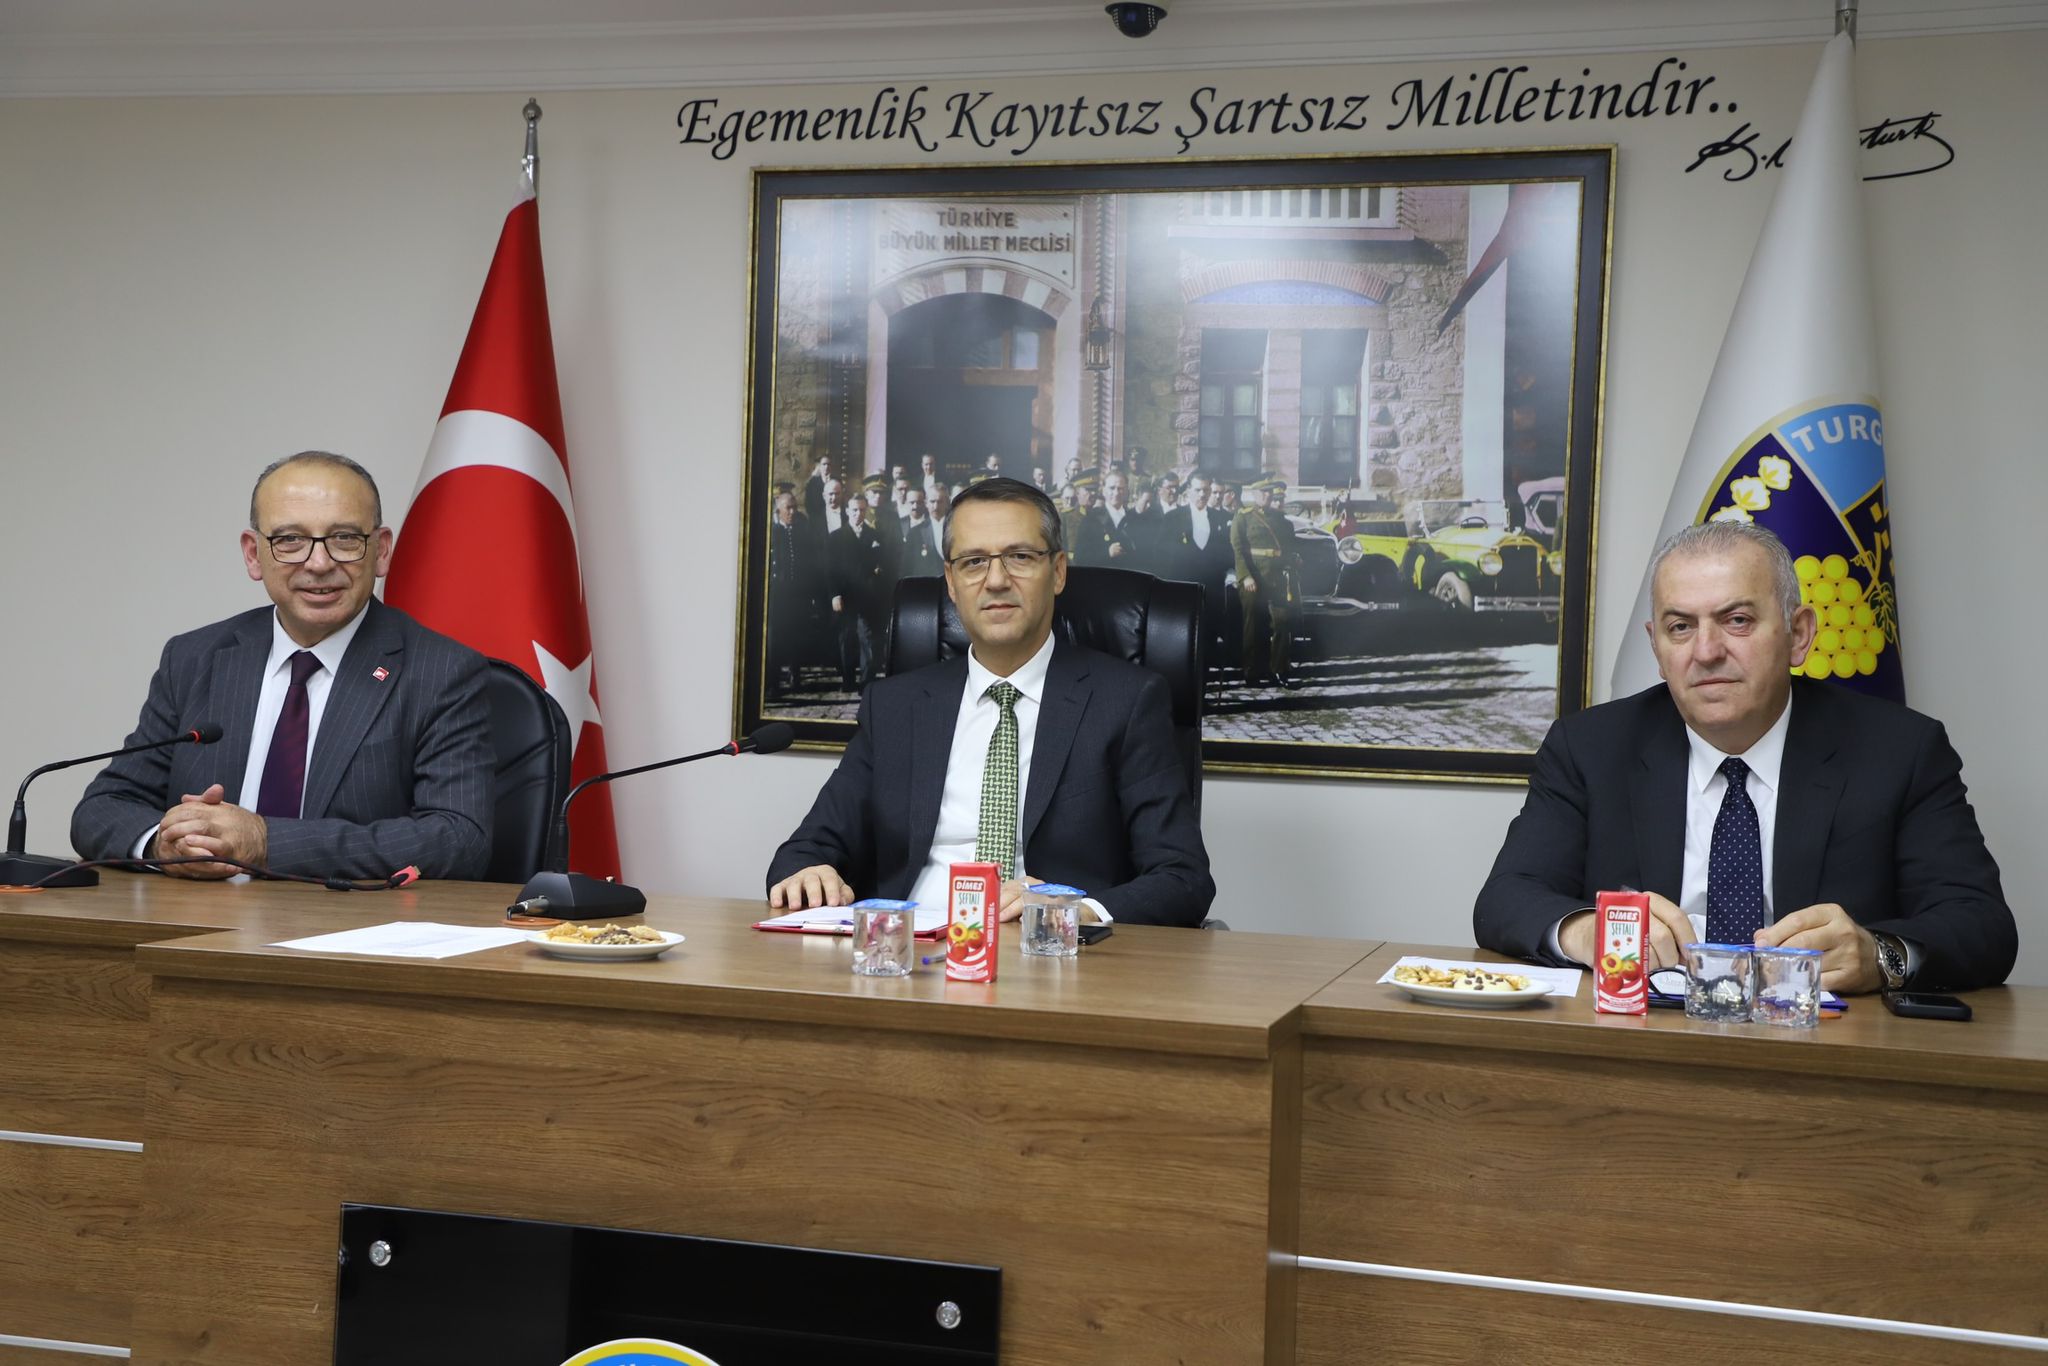 Turgutlu Organize Sanayi Bölgesi Müteşebbis Heyet Toplantımız Vali Yardımcımız Mustafa ÖZKAYNAK Başkanlığında Toplandı.